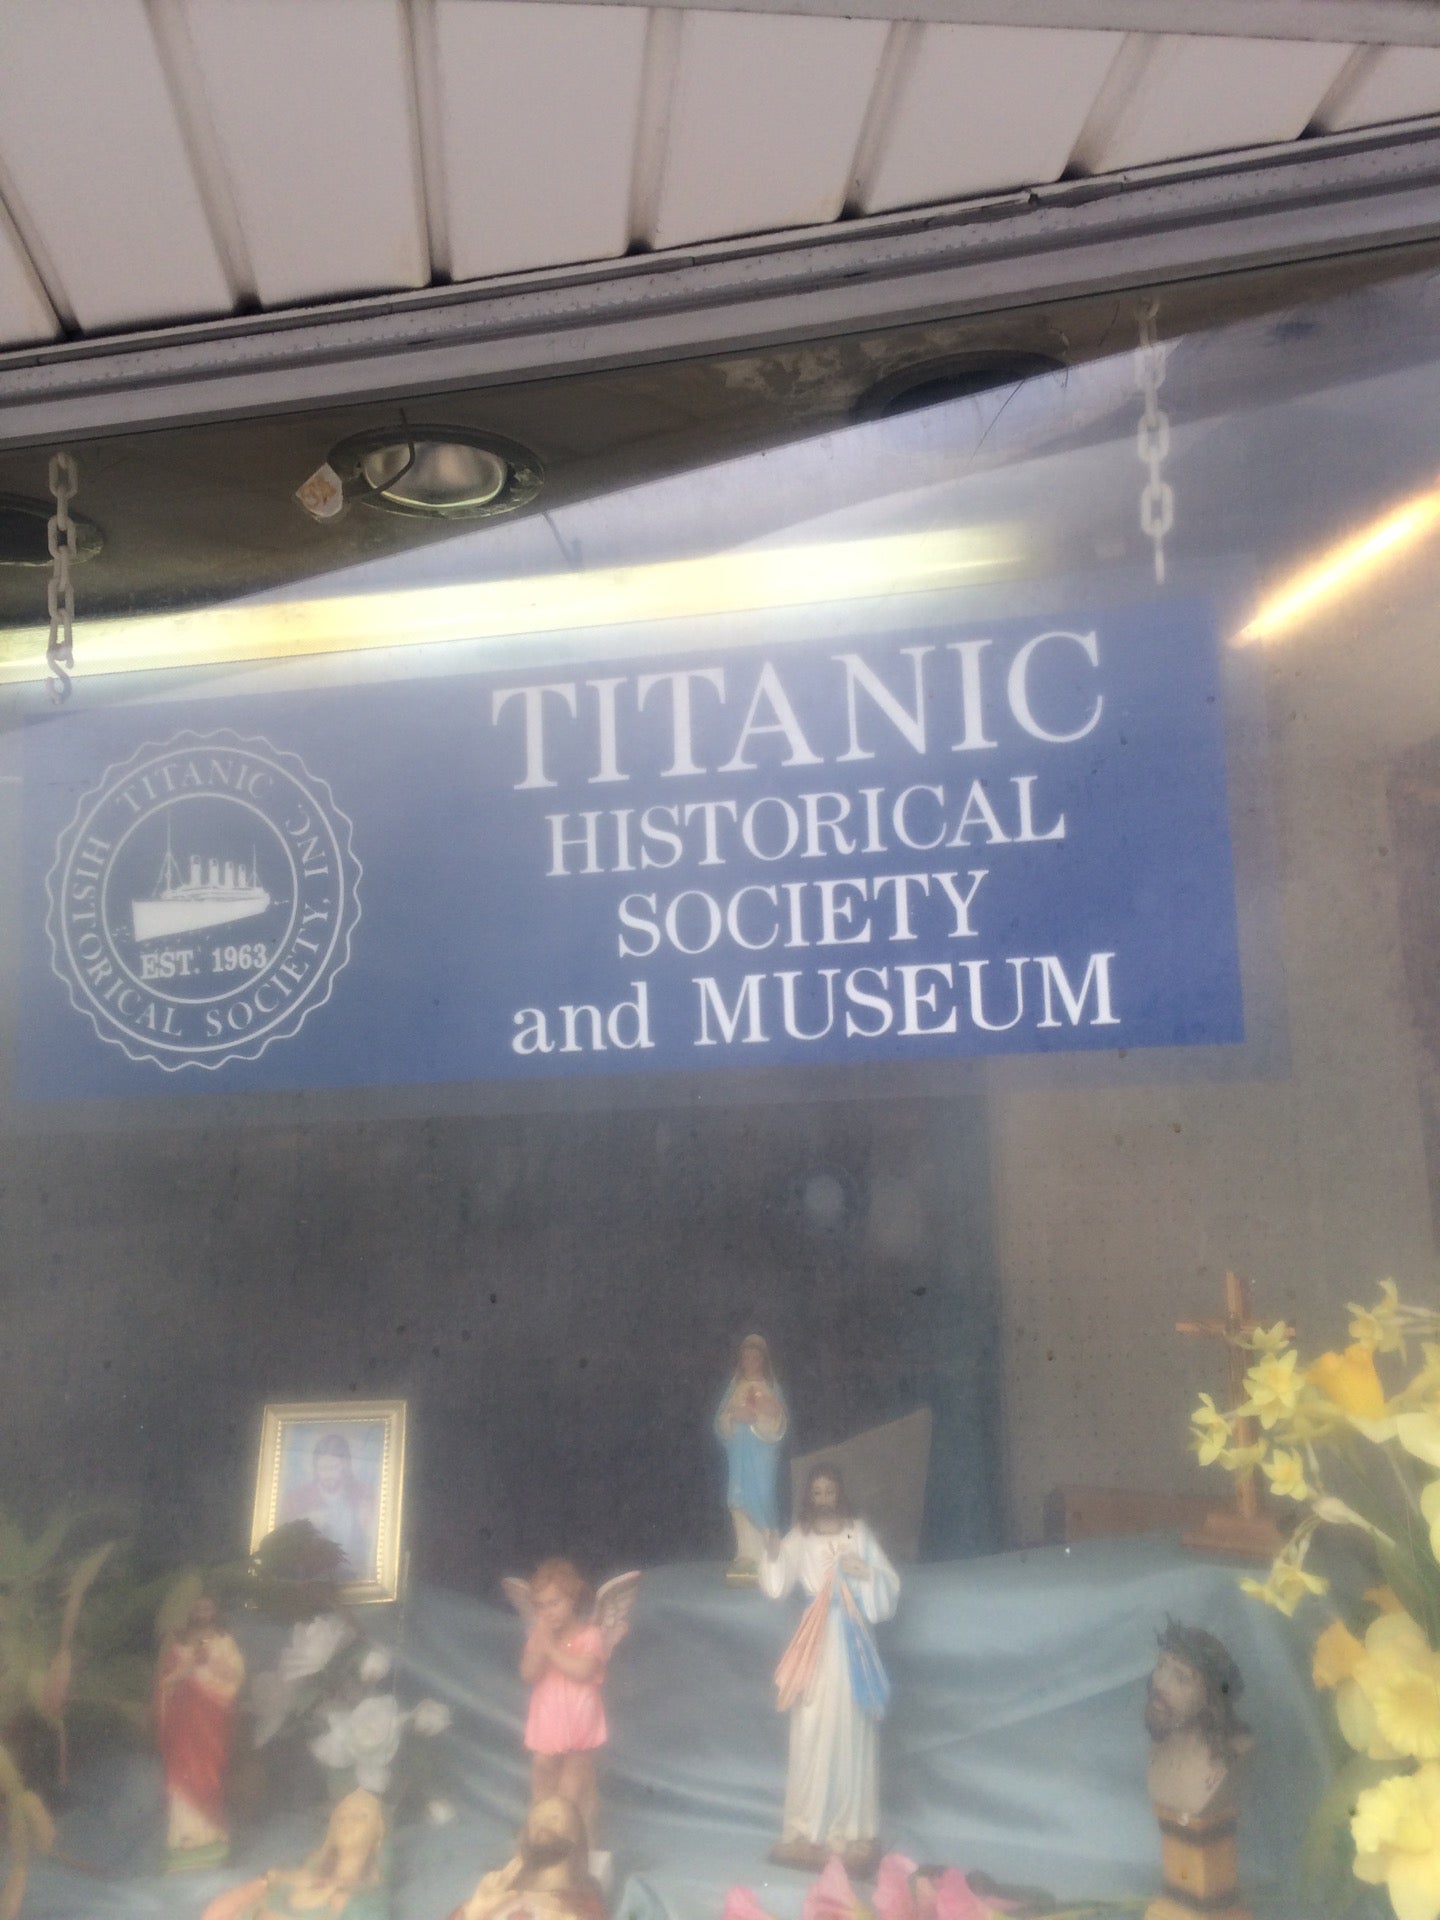 Titanic Historical Society, Inc., Established 1963